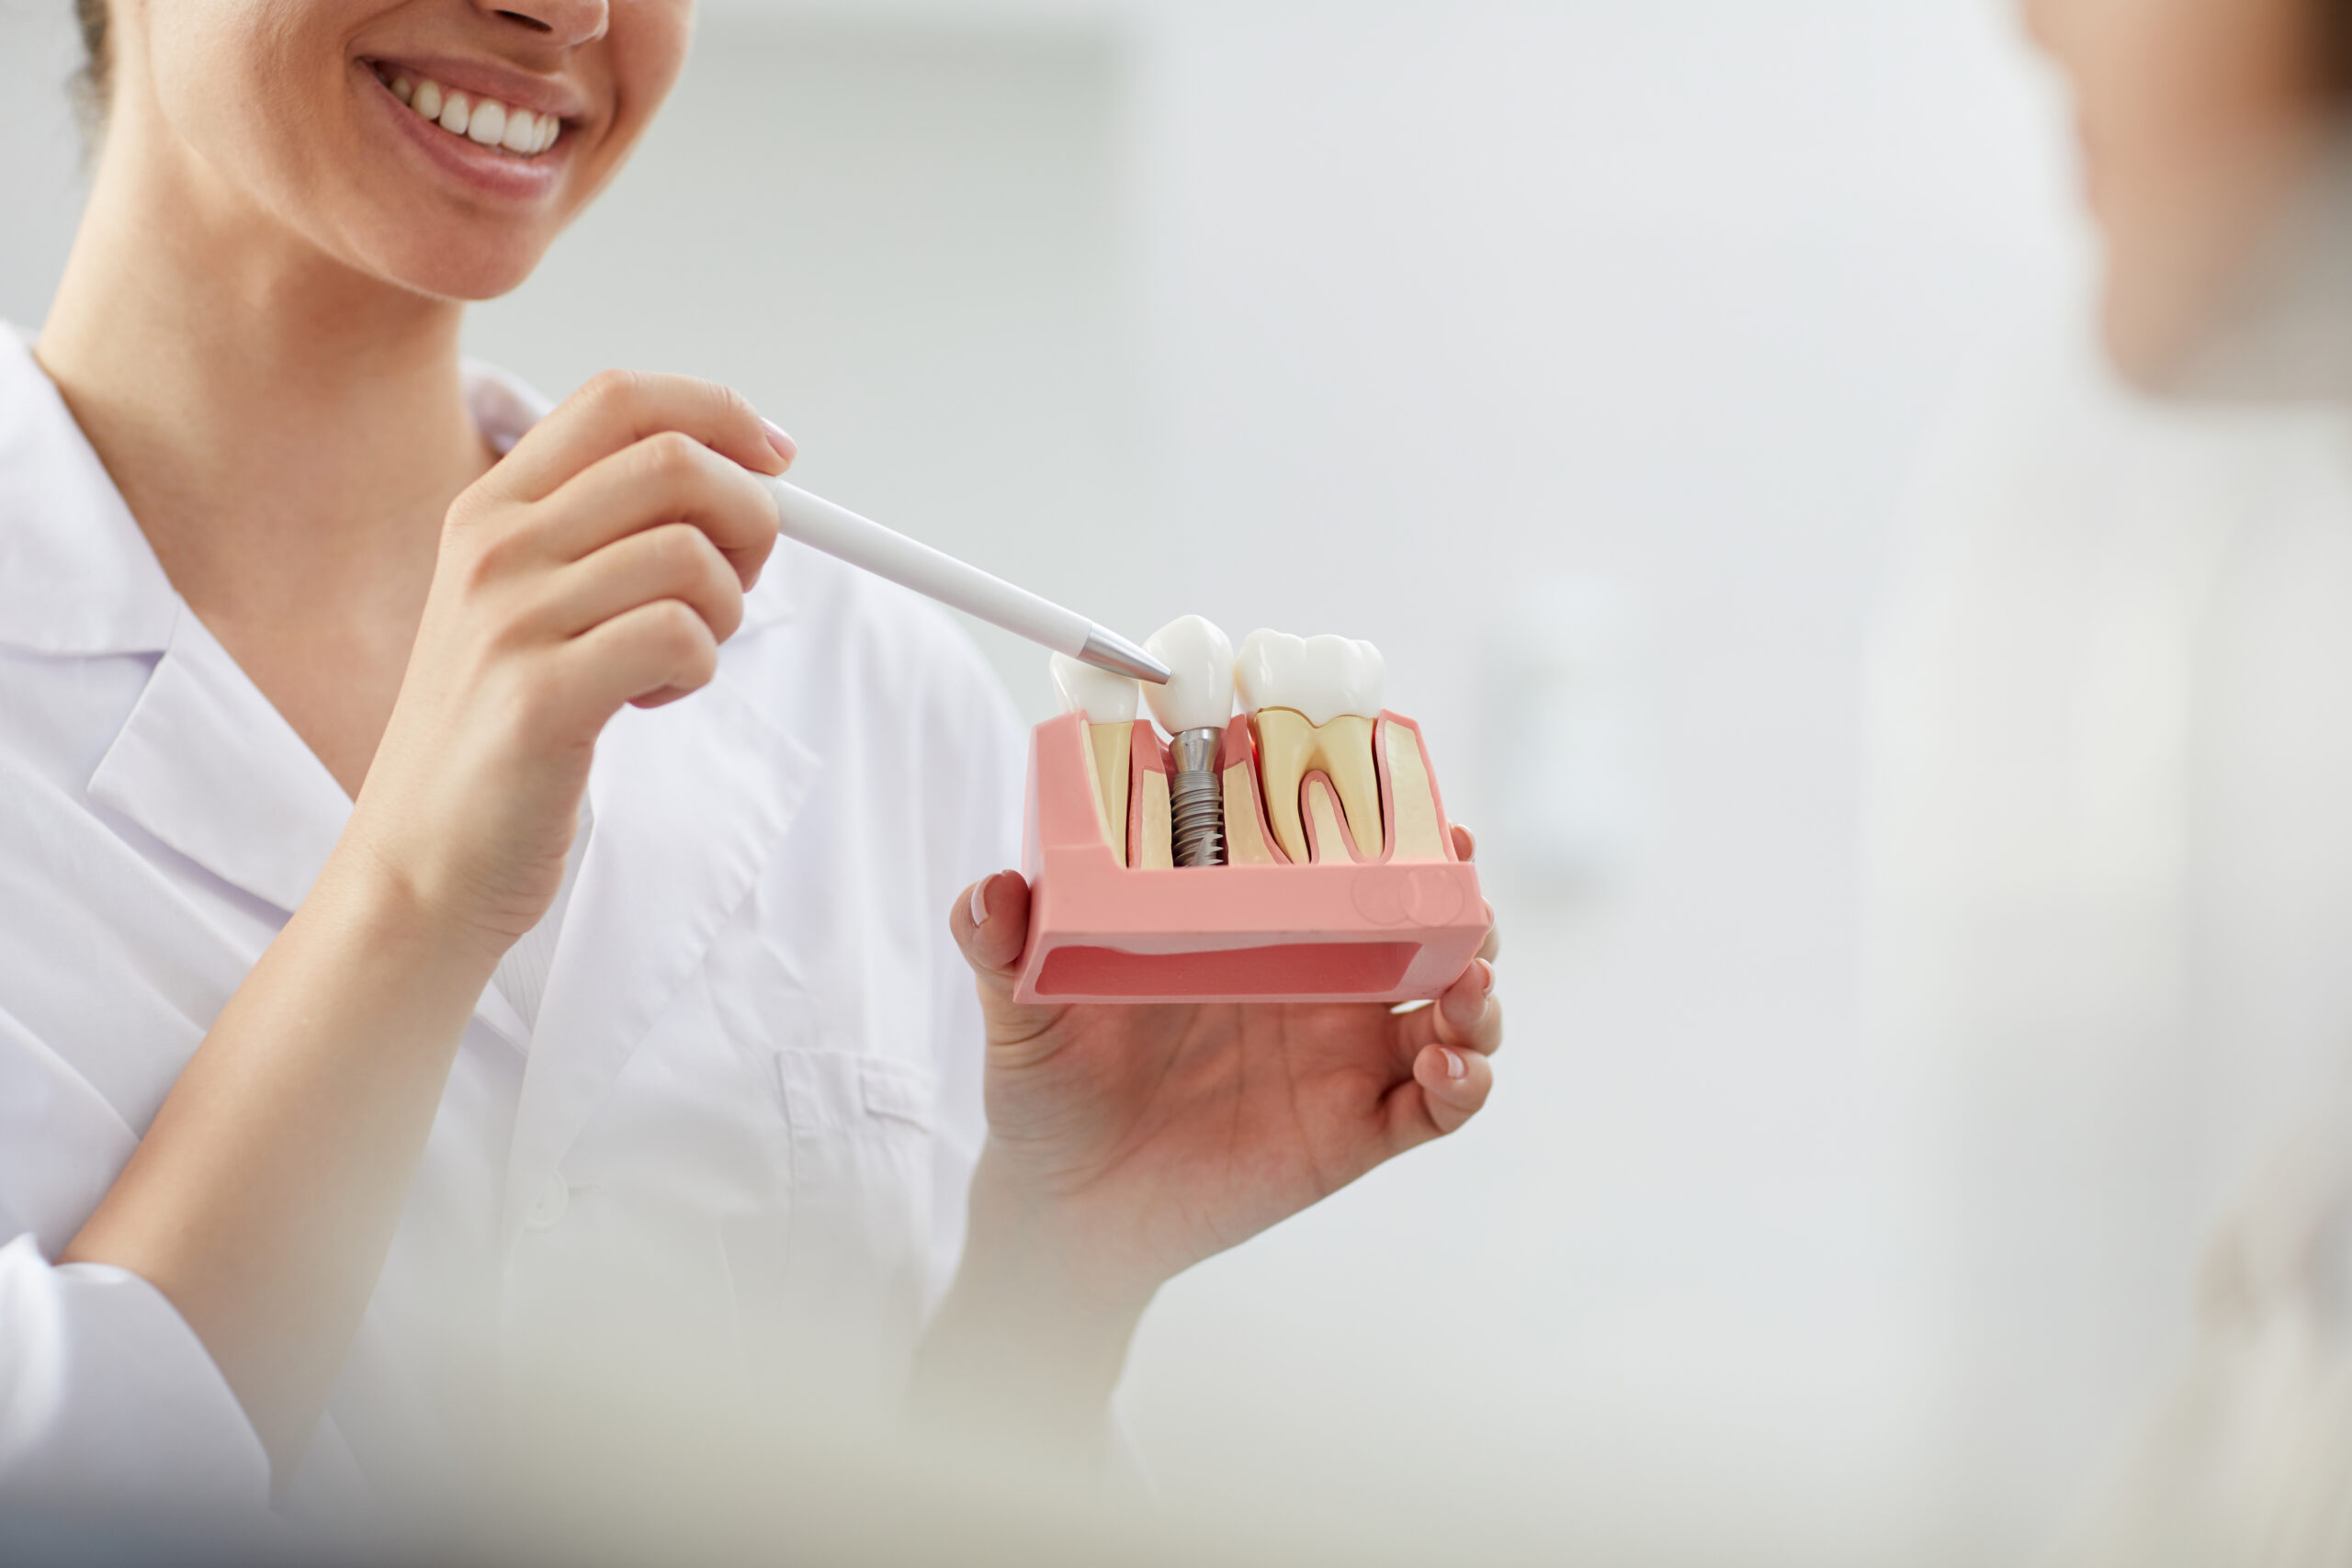 Quais as propriedades que um implante dentário deve apresentar?